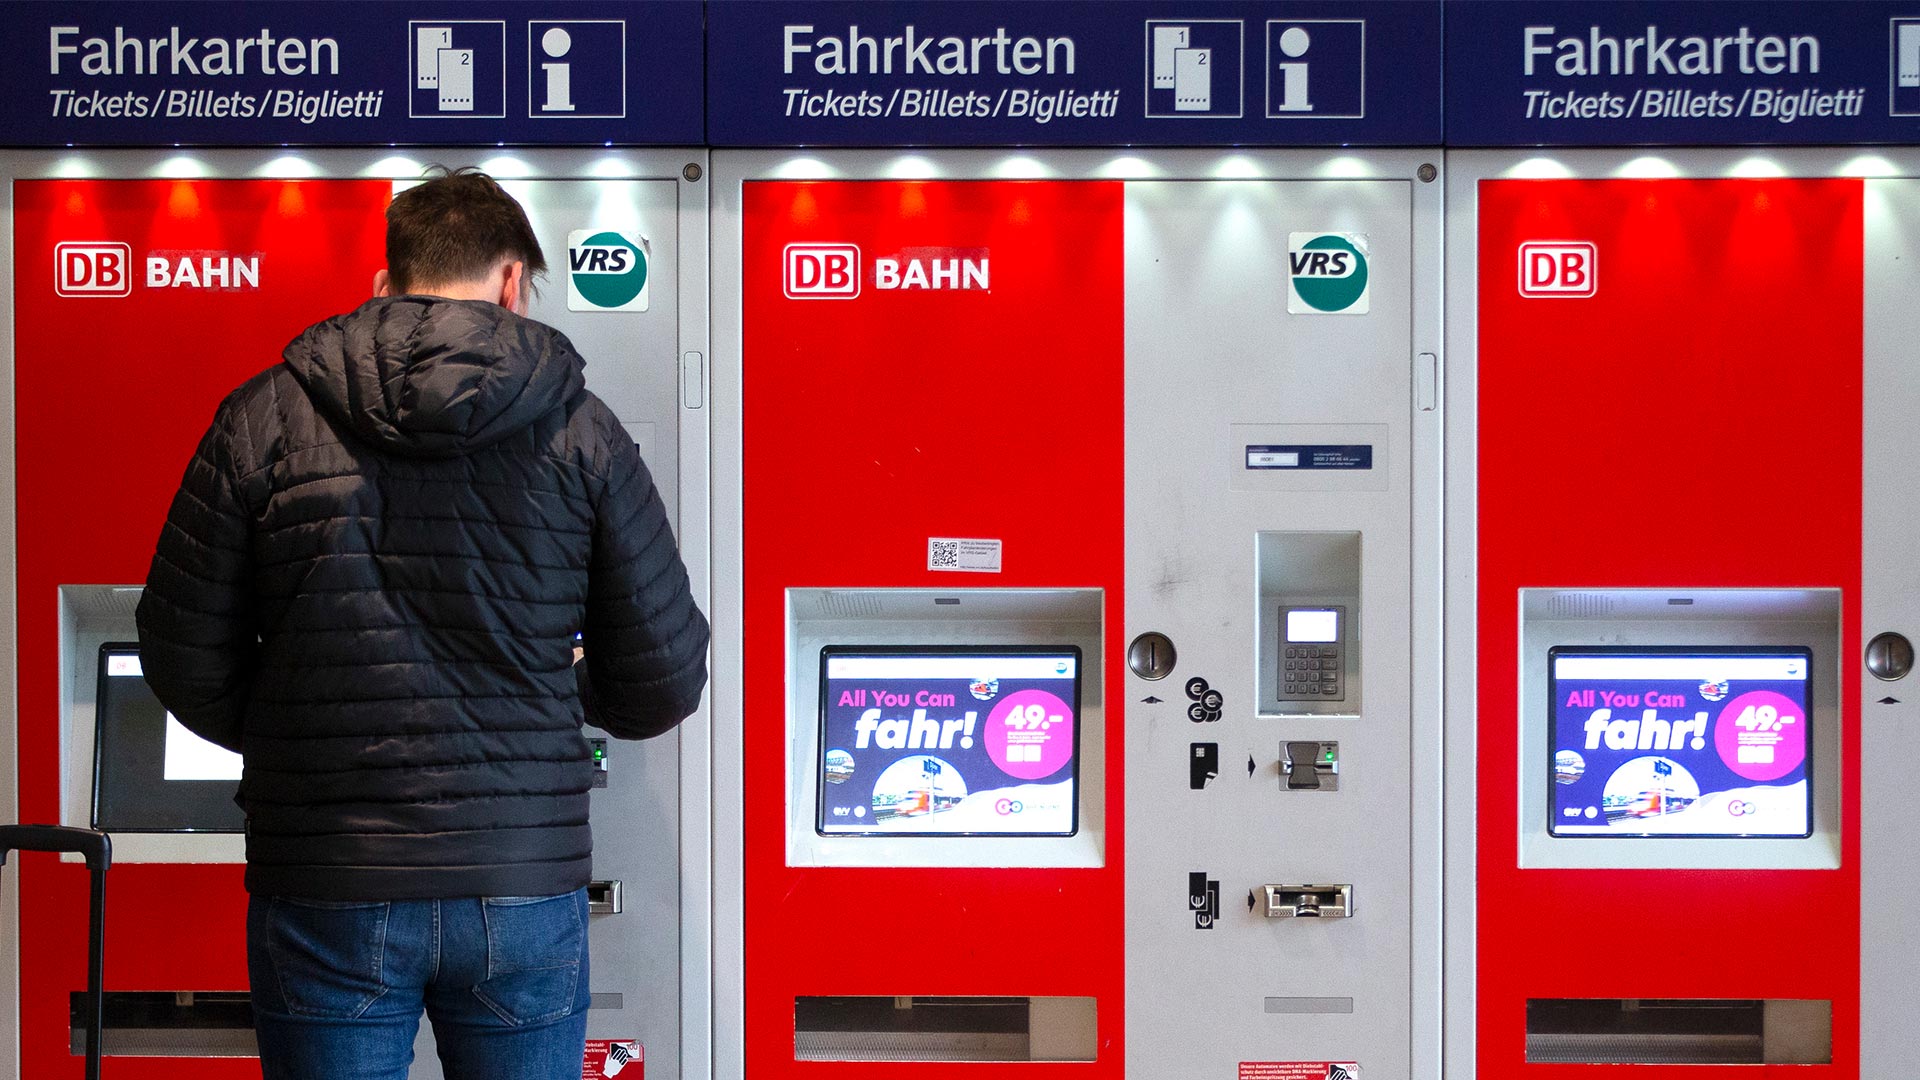 "All you can fahr! - 49 Euro - Das Deutschlandticket" steht auf den Monitoren von Fahrkartenautomaten.